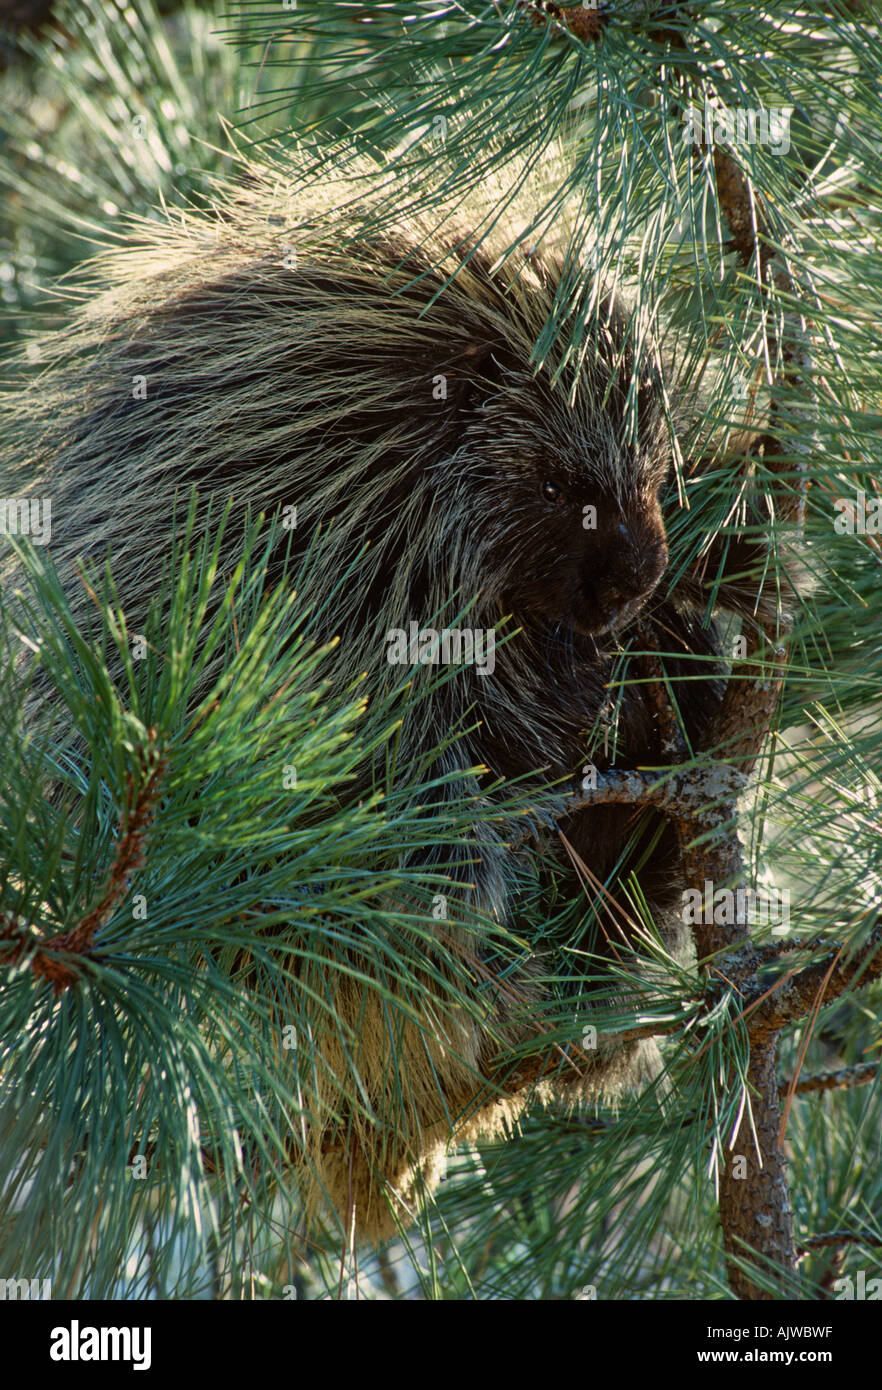 Le porc-épic, Erethizon dorsatum, dans un pin, le pin ponderosa Banque D'Images